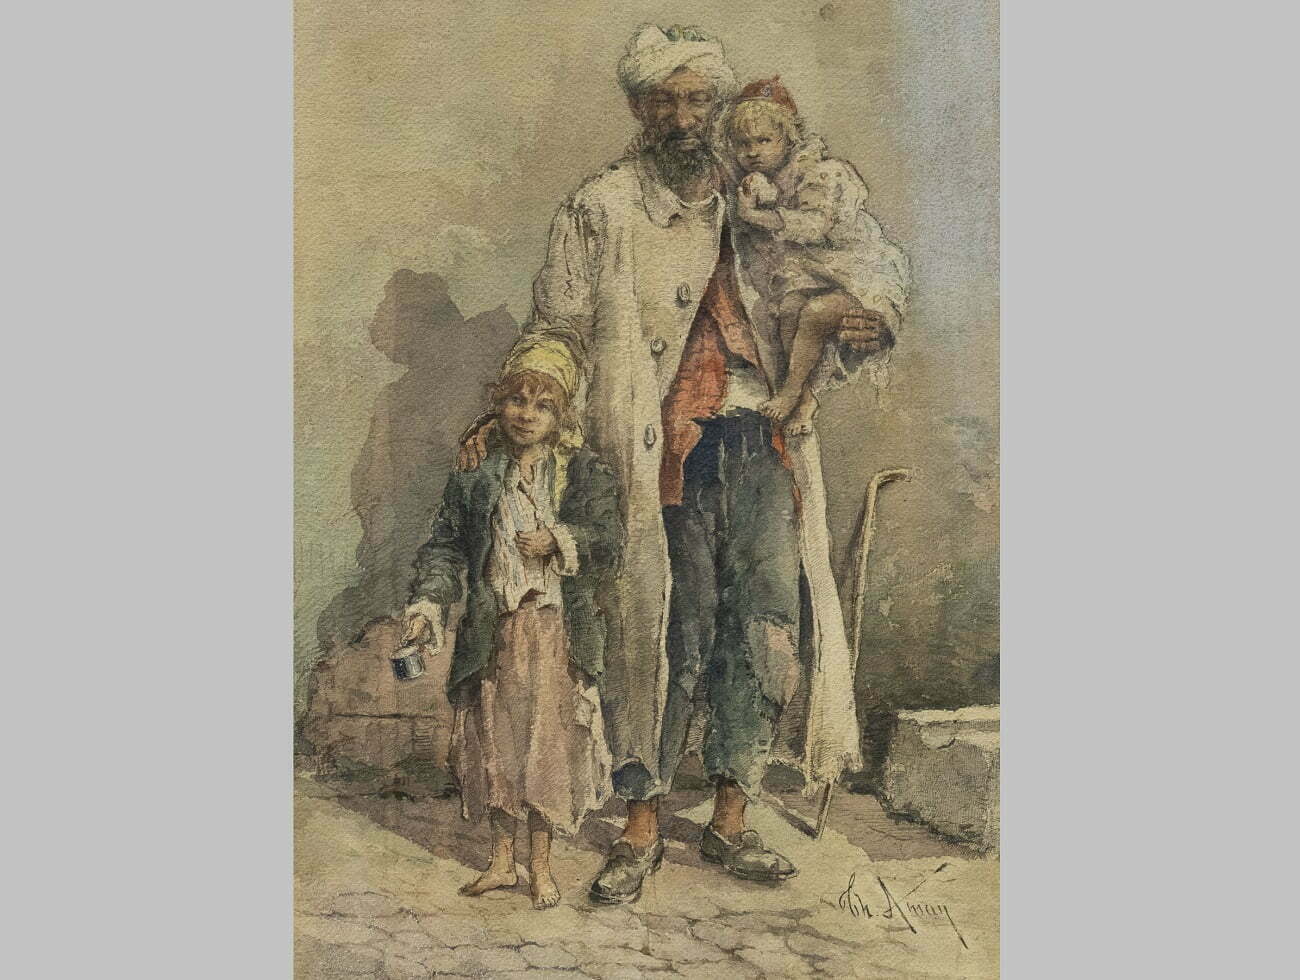 Acuarela „Cerșetori”, de Theodor Aman, vândută pentru 30.000 de lei în licitație la Alis